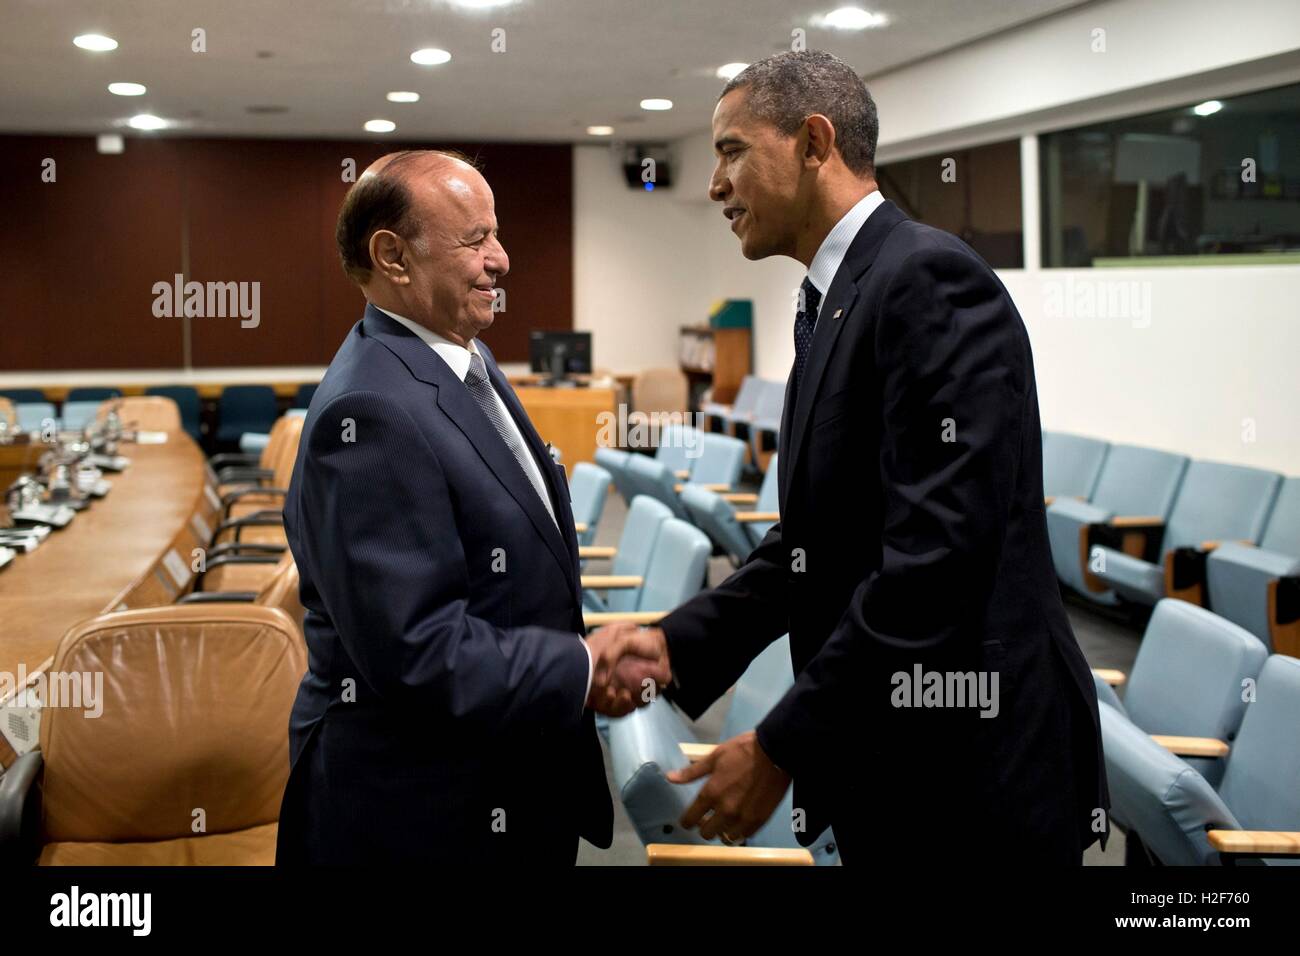 US-Präsident Barack Obama trifft sich mit jemenitischen Präsidenten Abd südjemenitische Mansur Hadi in den Sicherheitsrat Sprechzimmer bei den Vereinten Nationen 25. September 2012 in New York City. Stockfoto